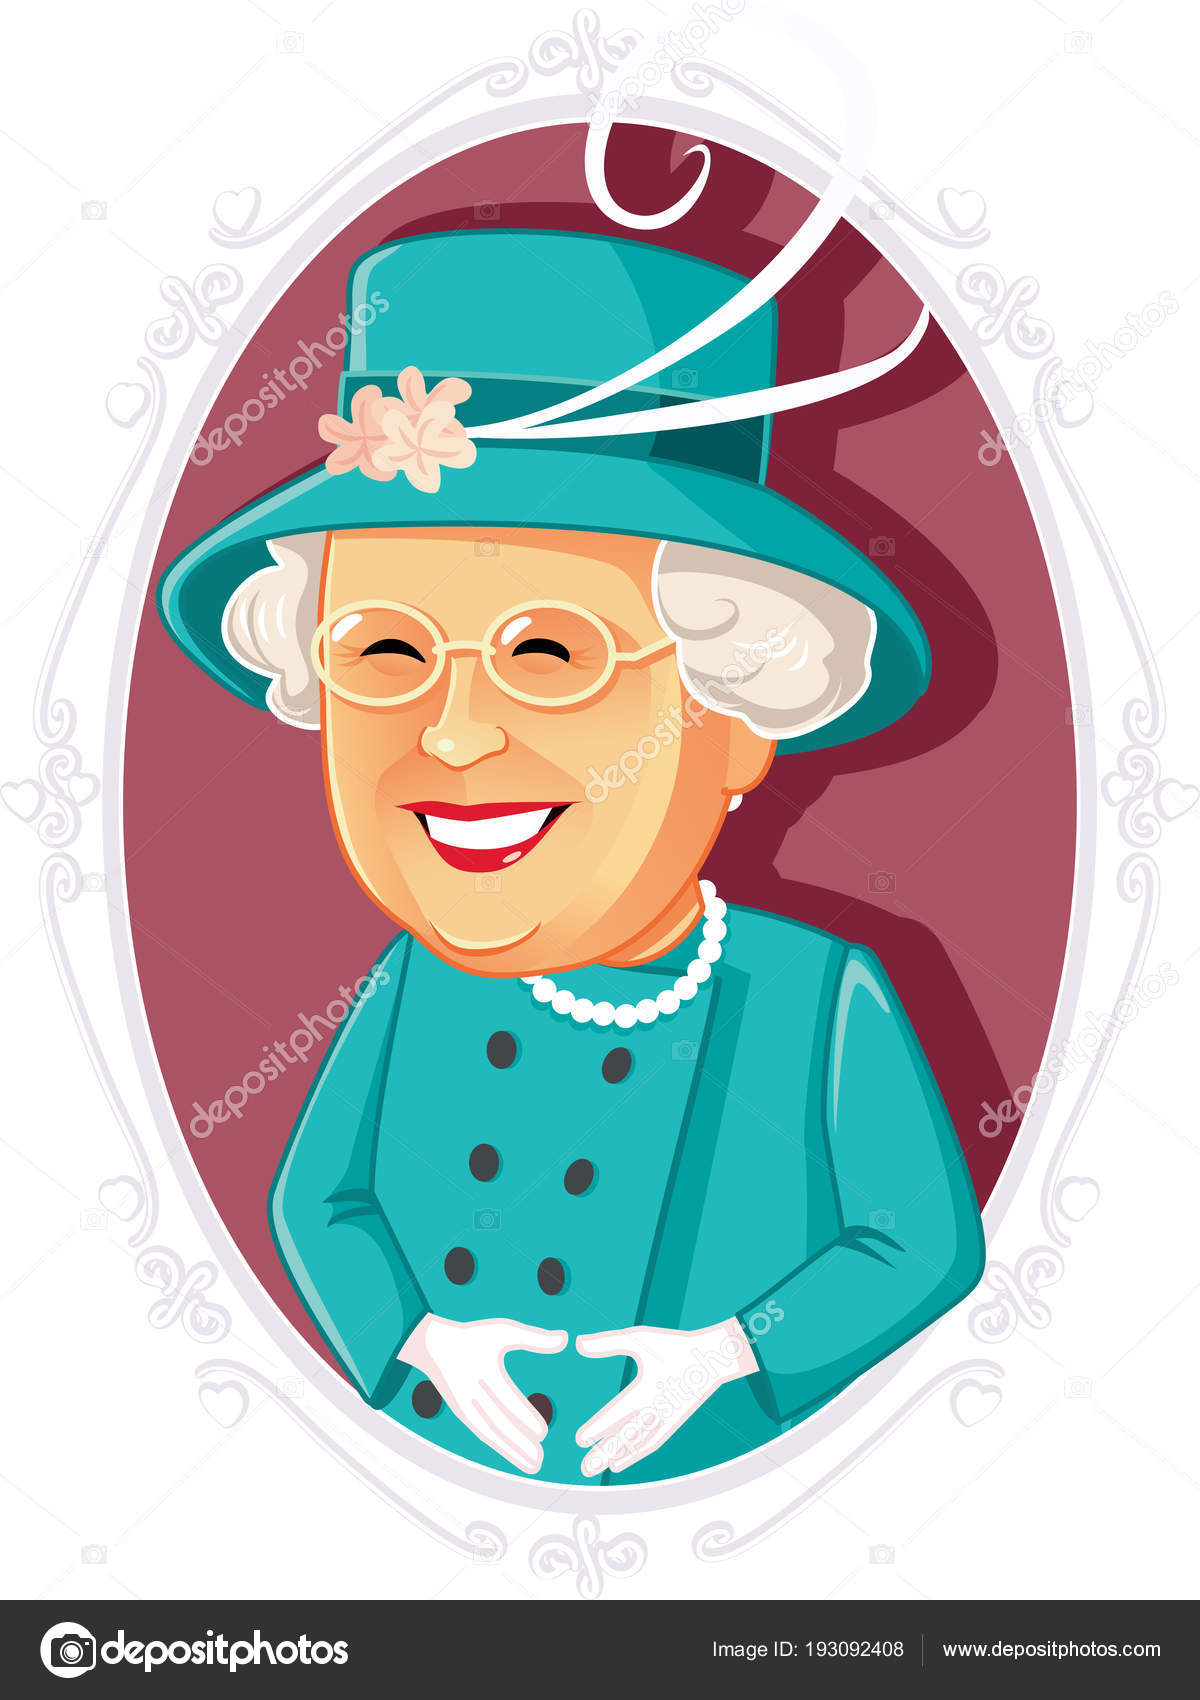 Queen elizabeth cartoon Vector Art Stock Images | Depositphotos